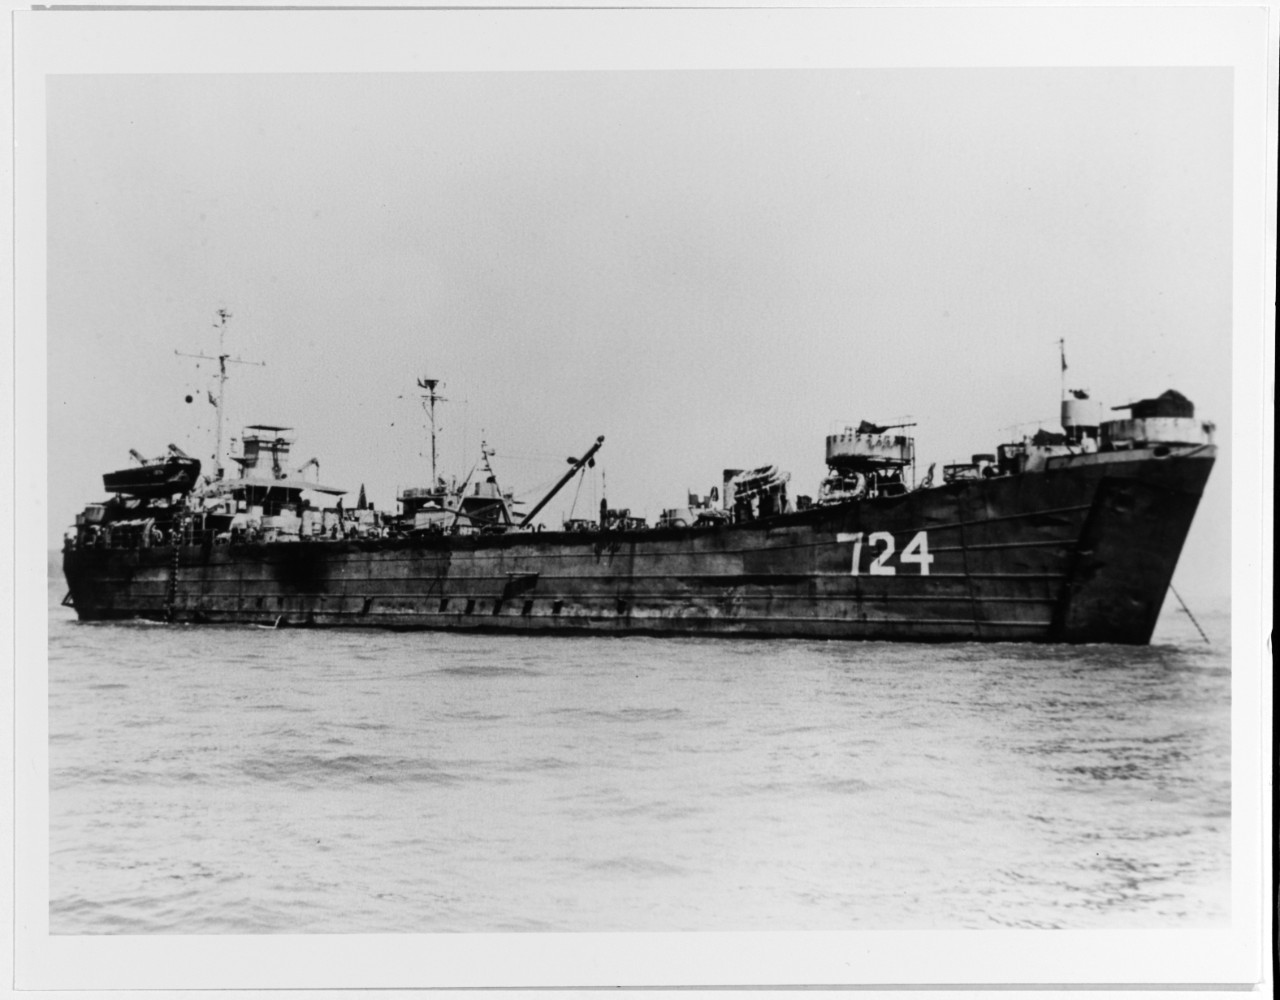 USS LST-724